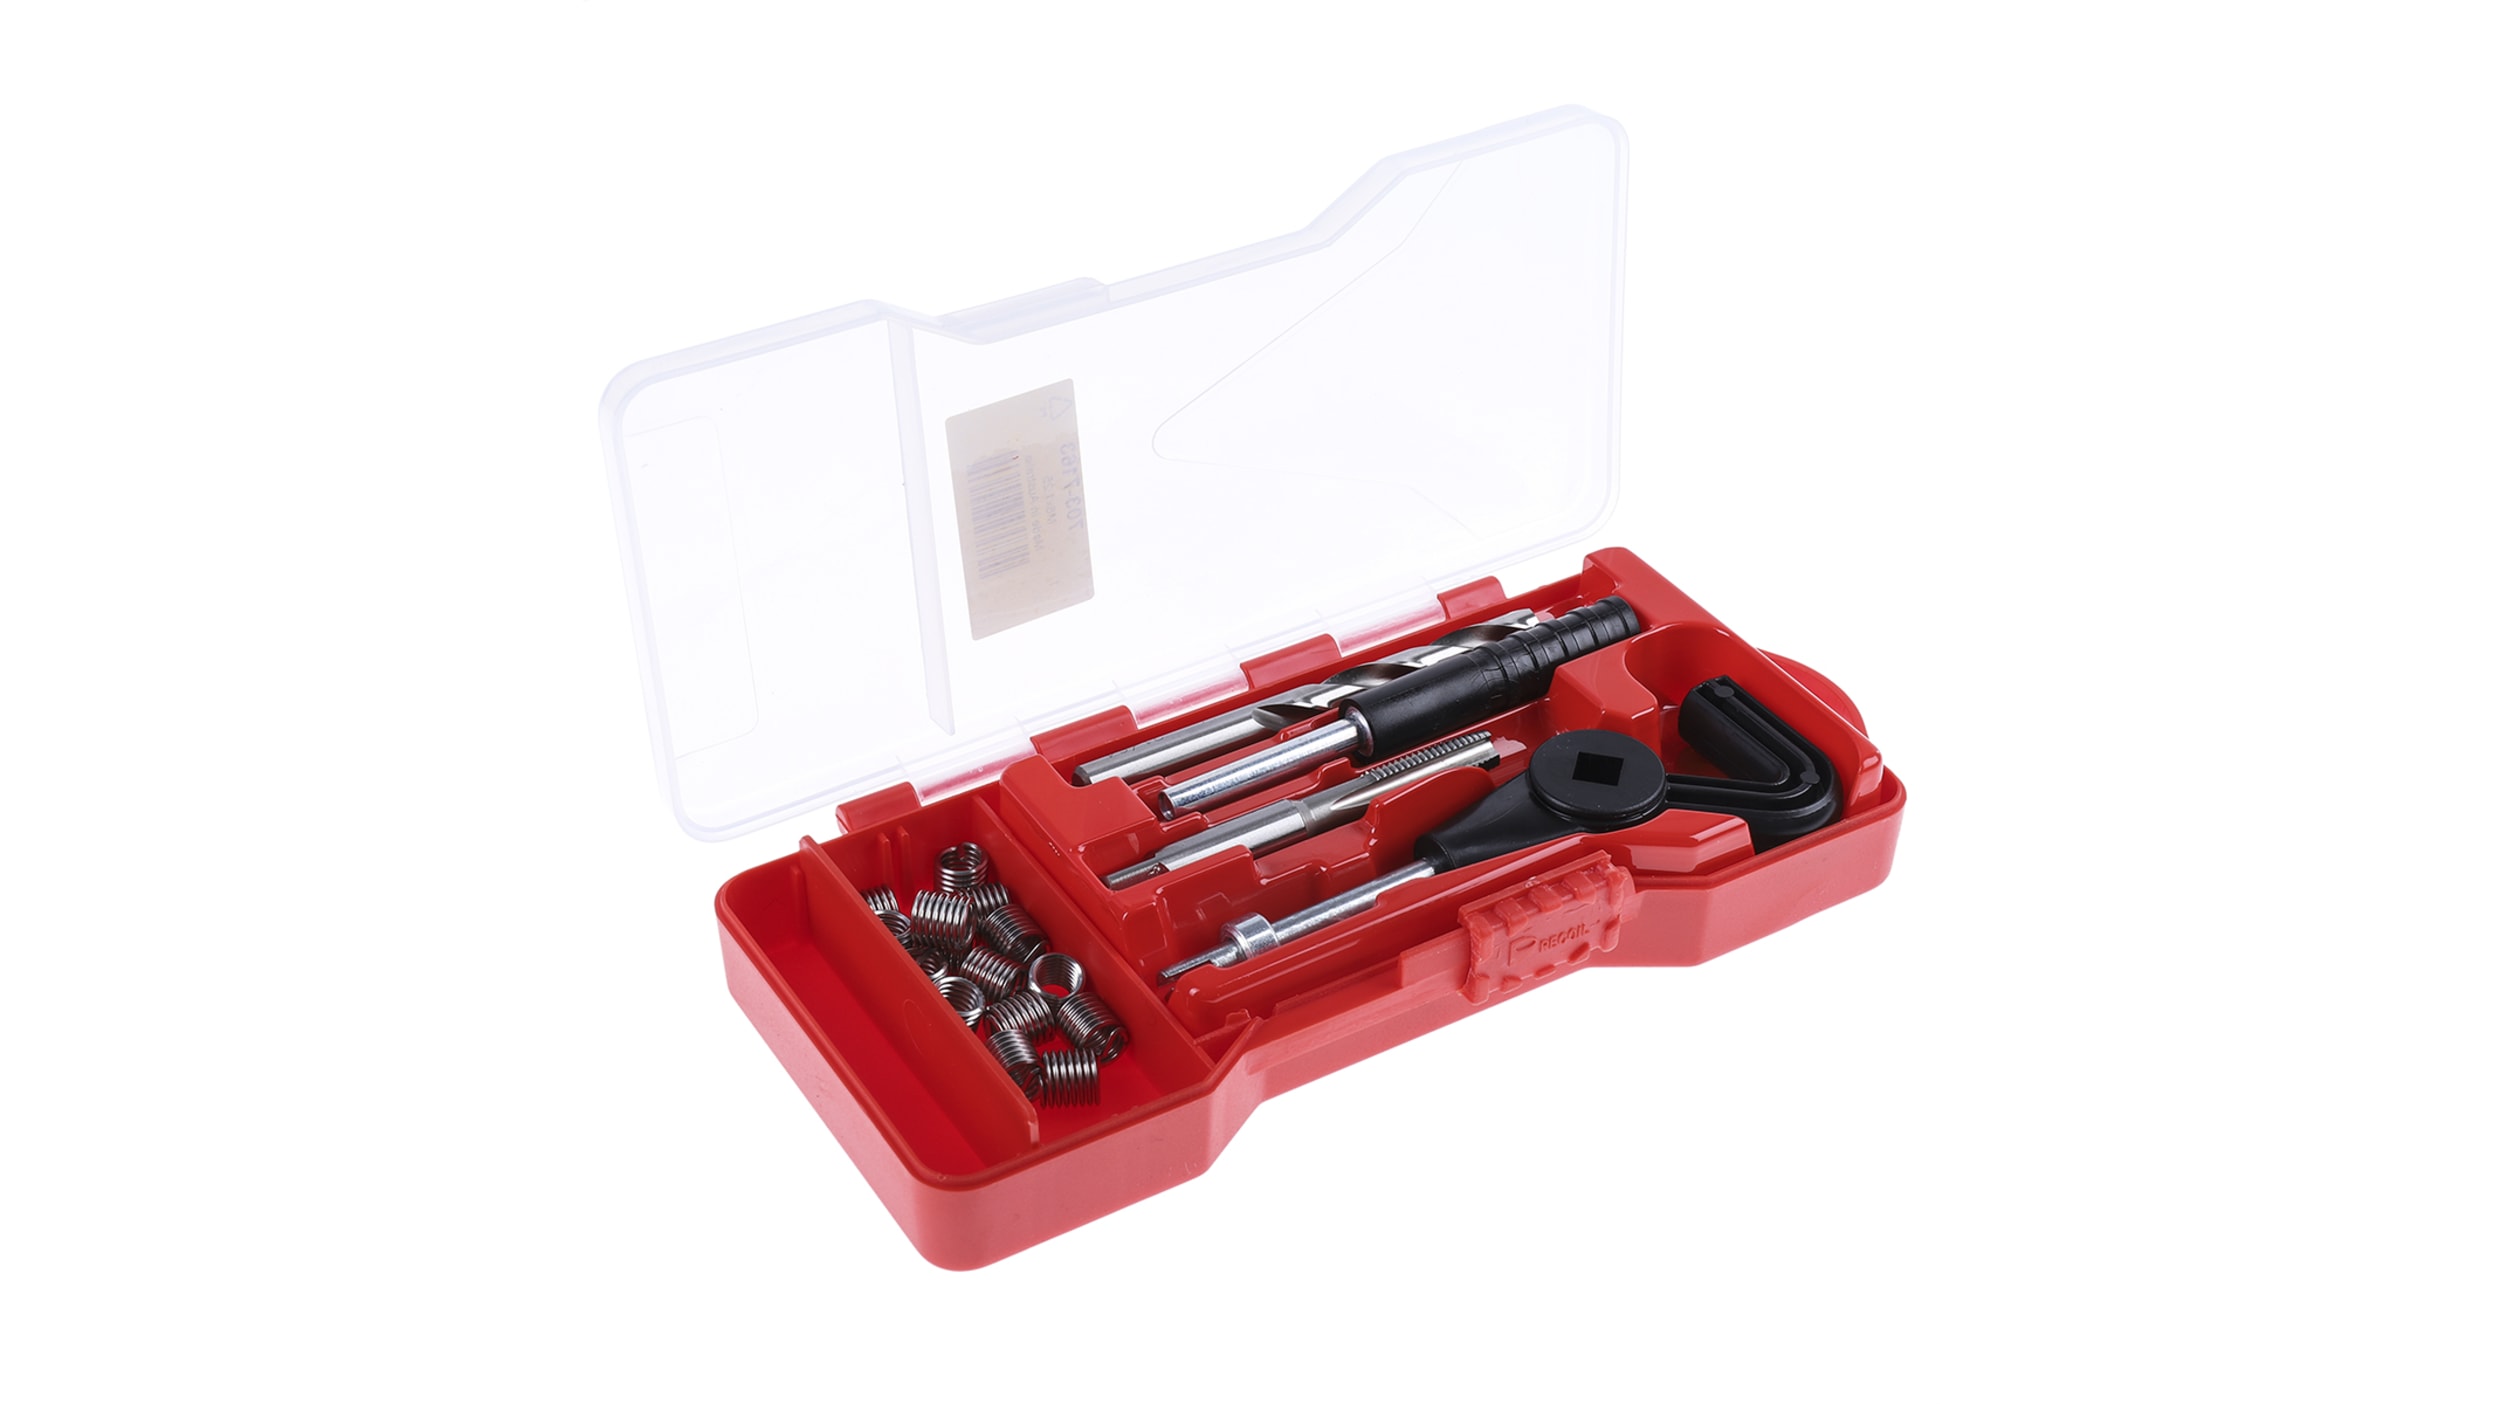 Kit de Réparation de Filetage Métrique Inserts de Taraudage Outil Kit de  Réparation de Foret de Filetage Kit D'outils de Taraudage Kit de Réparation